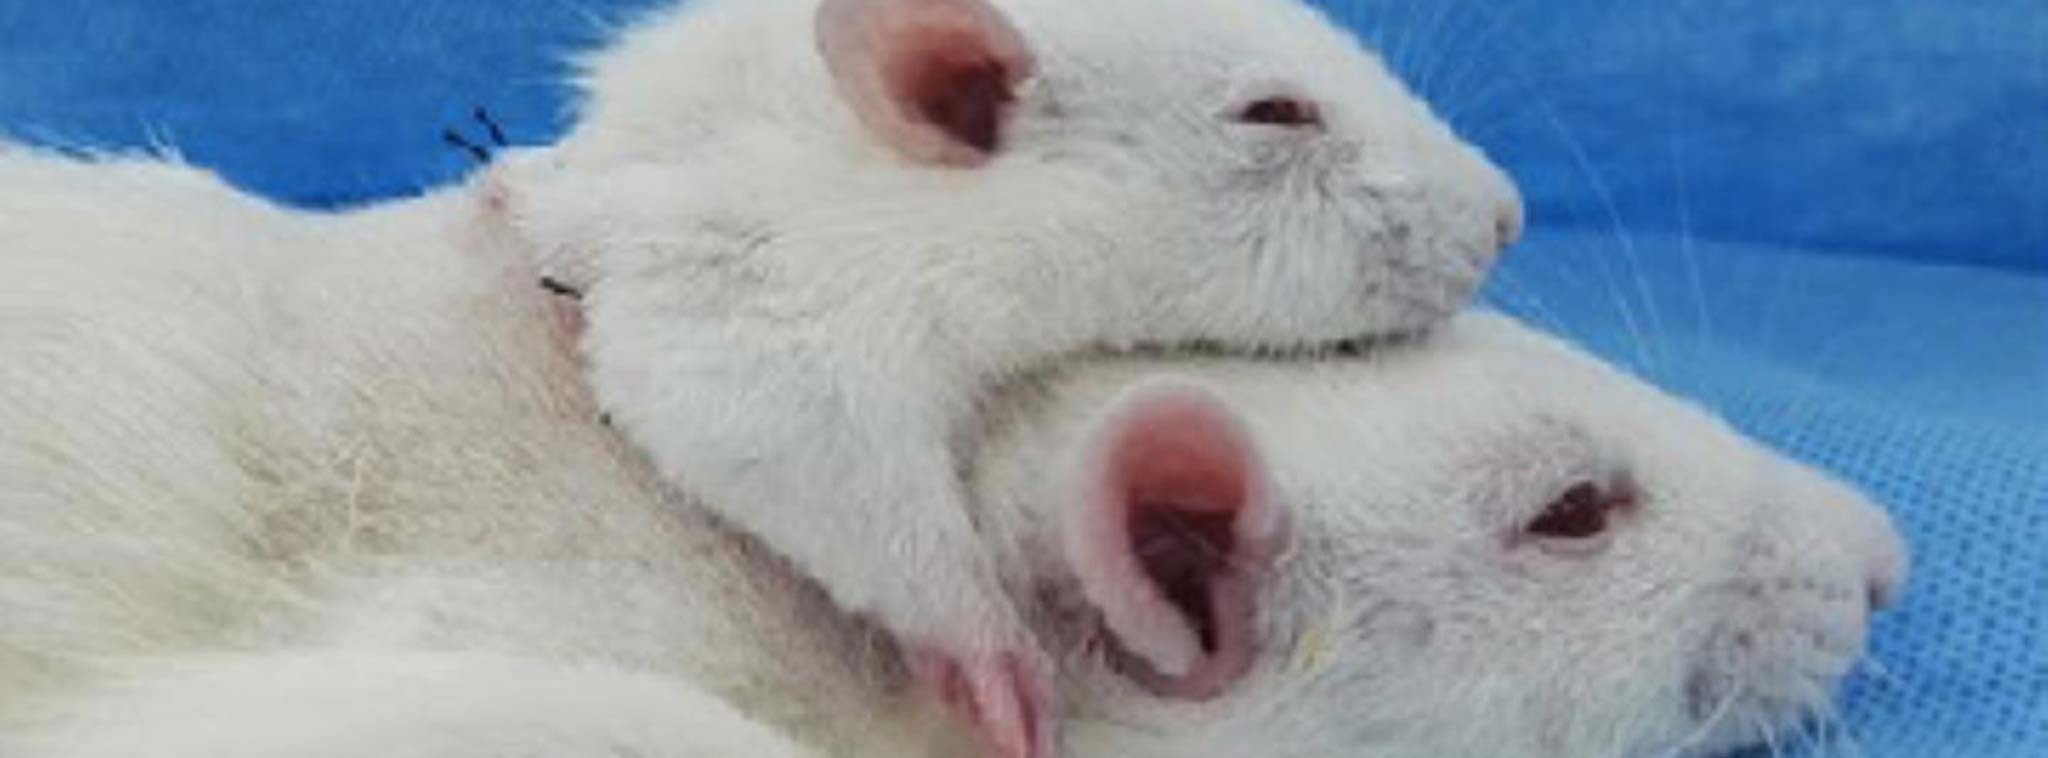 Ghép thành công đầu chuột này sang chuột khác, não vẫn an toàn, có thể áp dụng cho người?